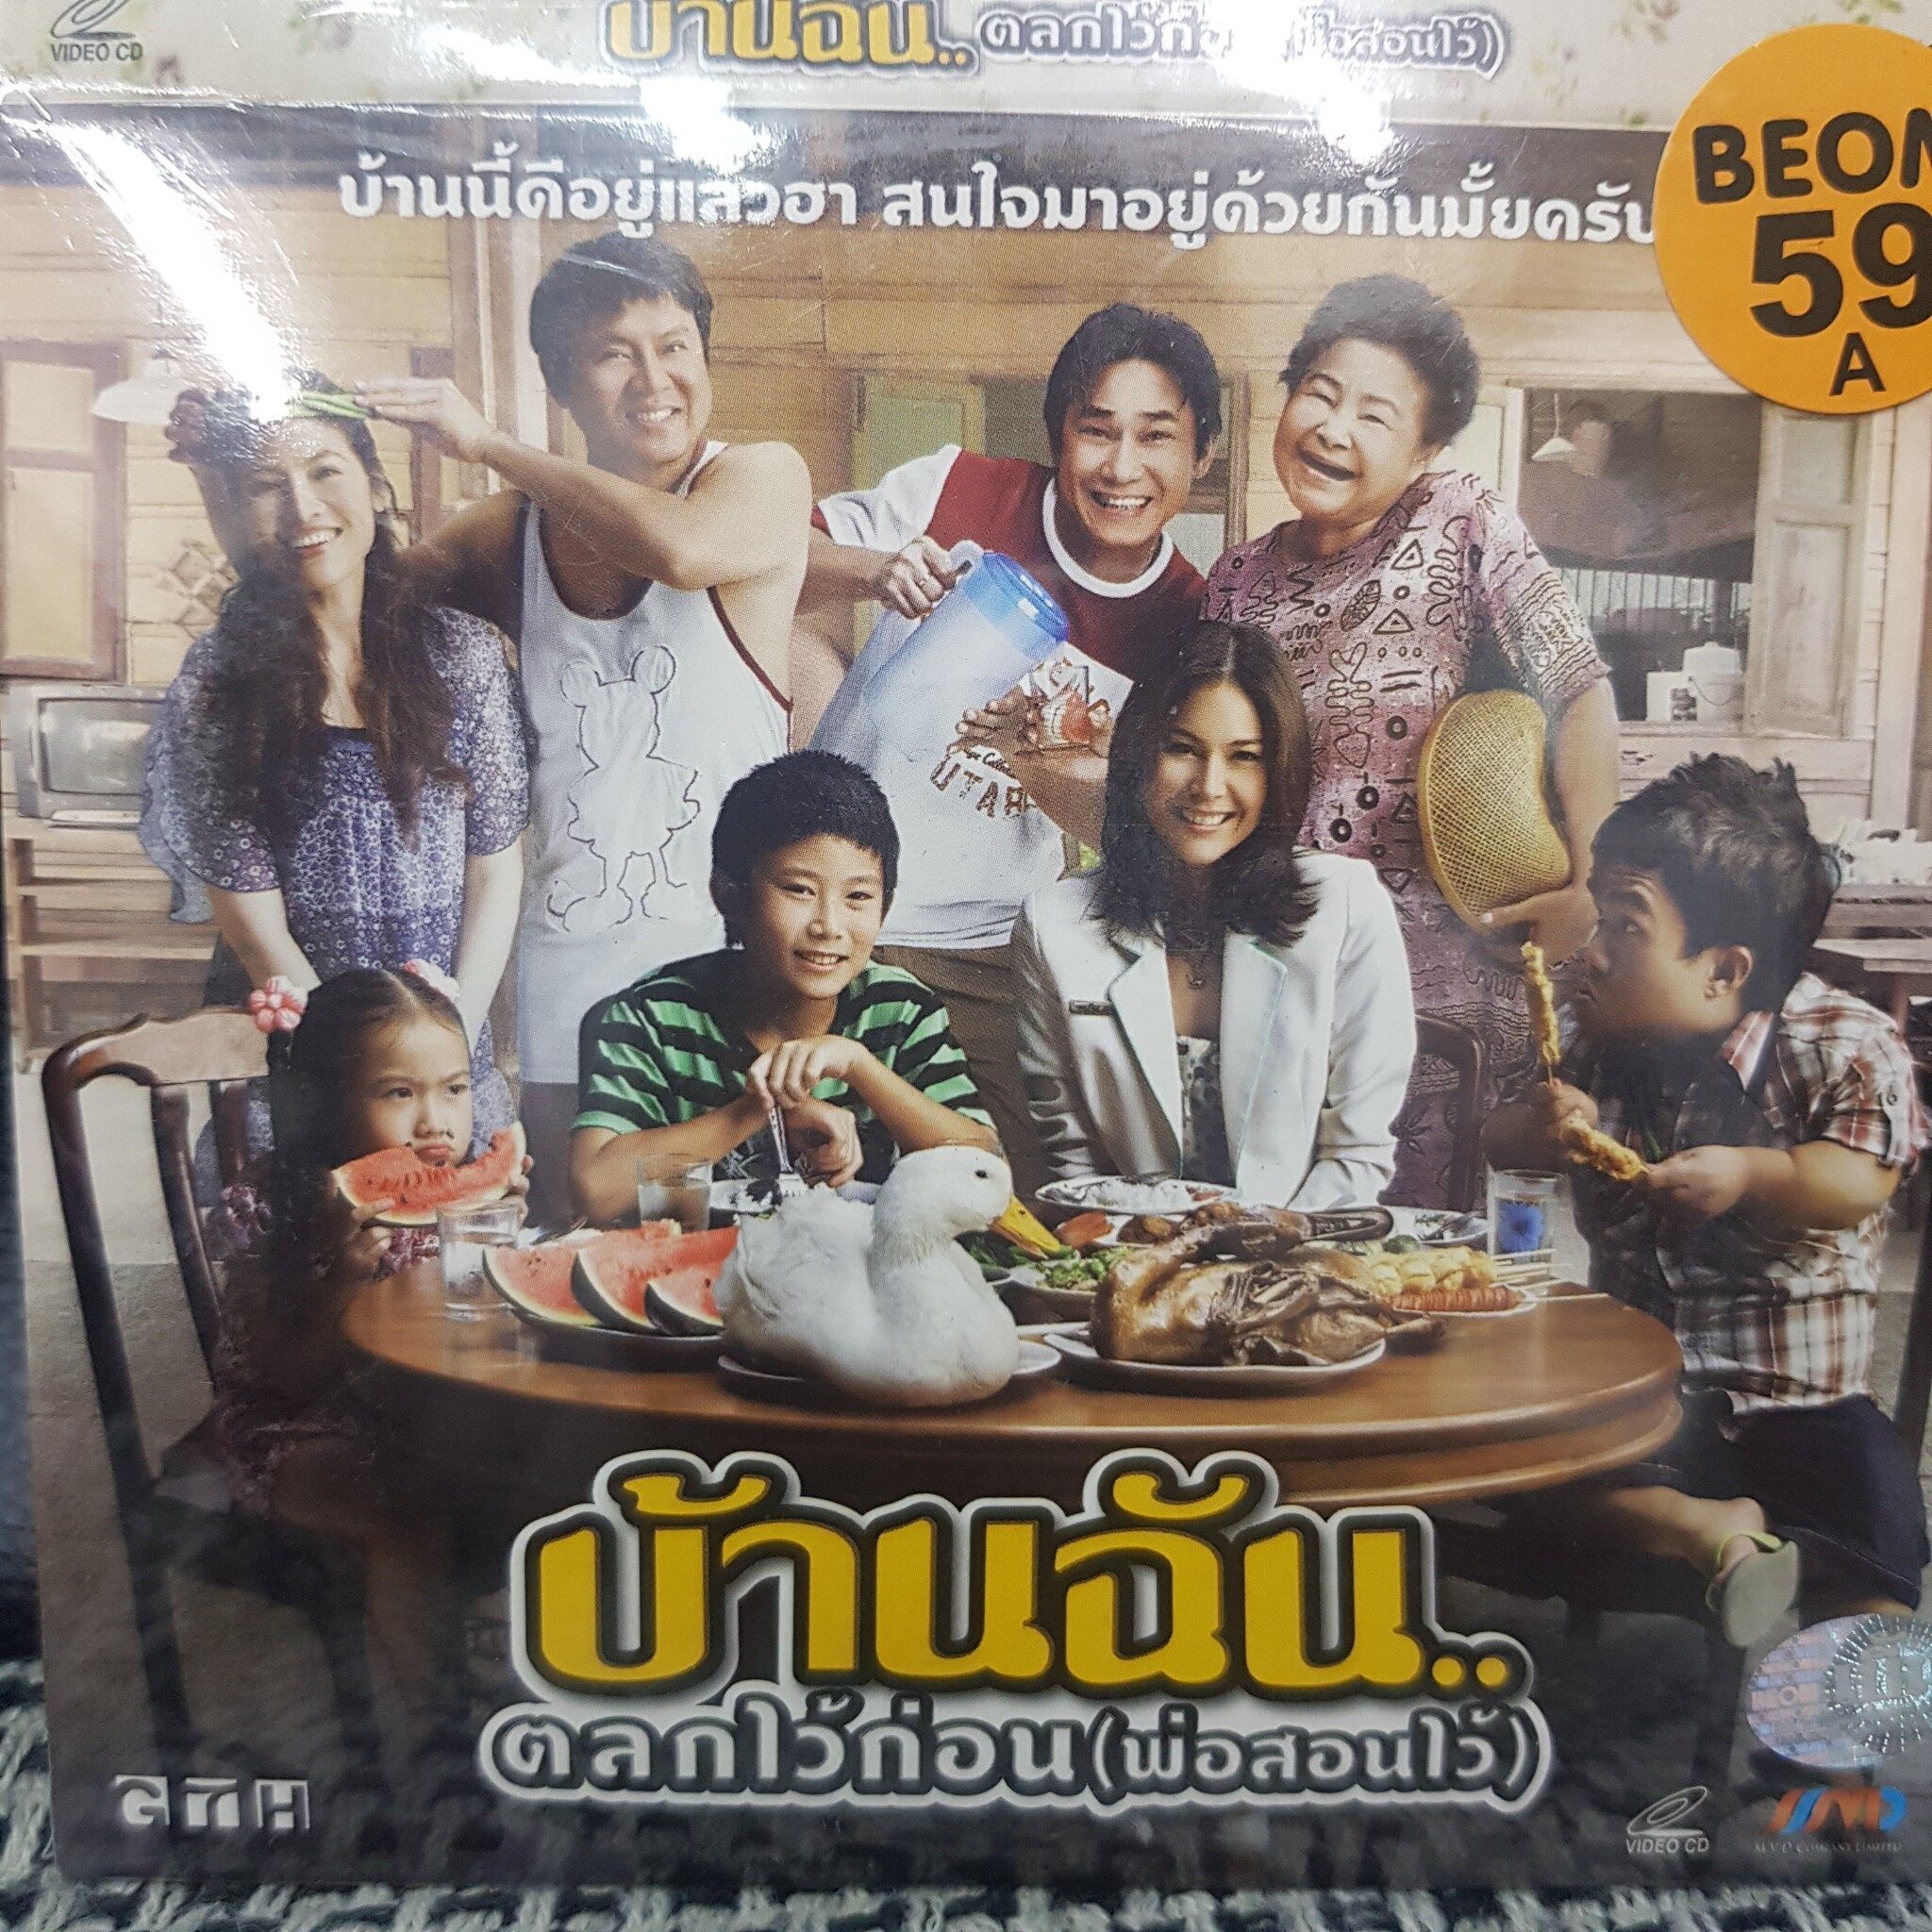 VCDหนัง บ้านฉัน ตลกไว้ก่อน พ่อสอนไว้ พากย์ไทย (SBYVCD2020-บ้านฉันตลกไว้ก่อนพ่อสอนไว้) โรแมนติก แผ่นหนัง สะสม หนังโรงภาพยนตร์ ภาพยนตร์ หนังไทยเก่า หนัง งาน2020 cinema vcd วีซีดี STARMART